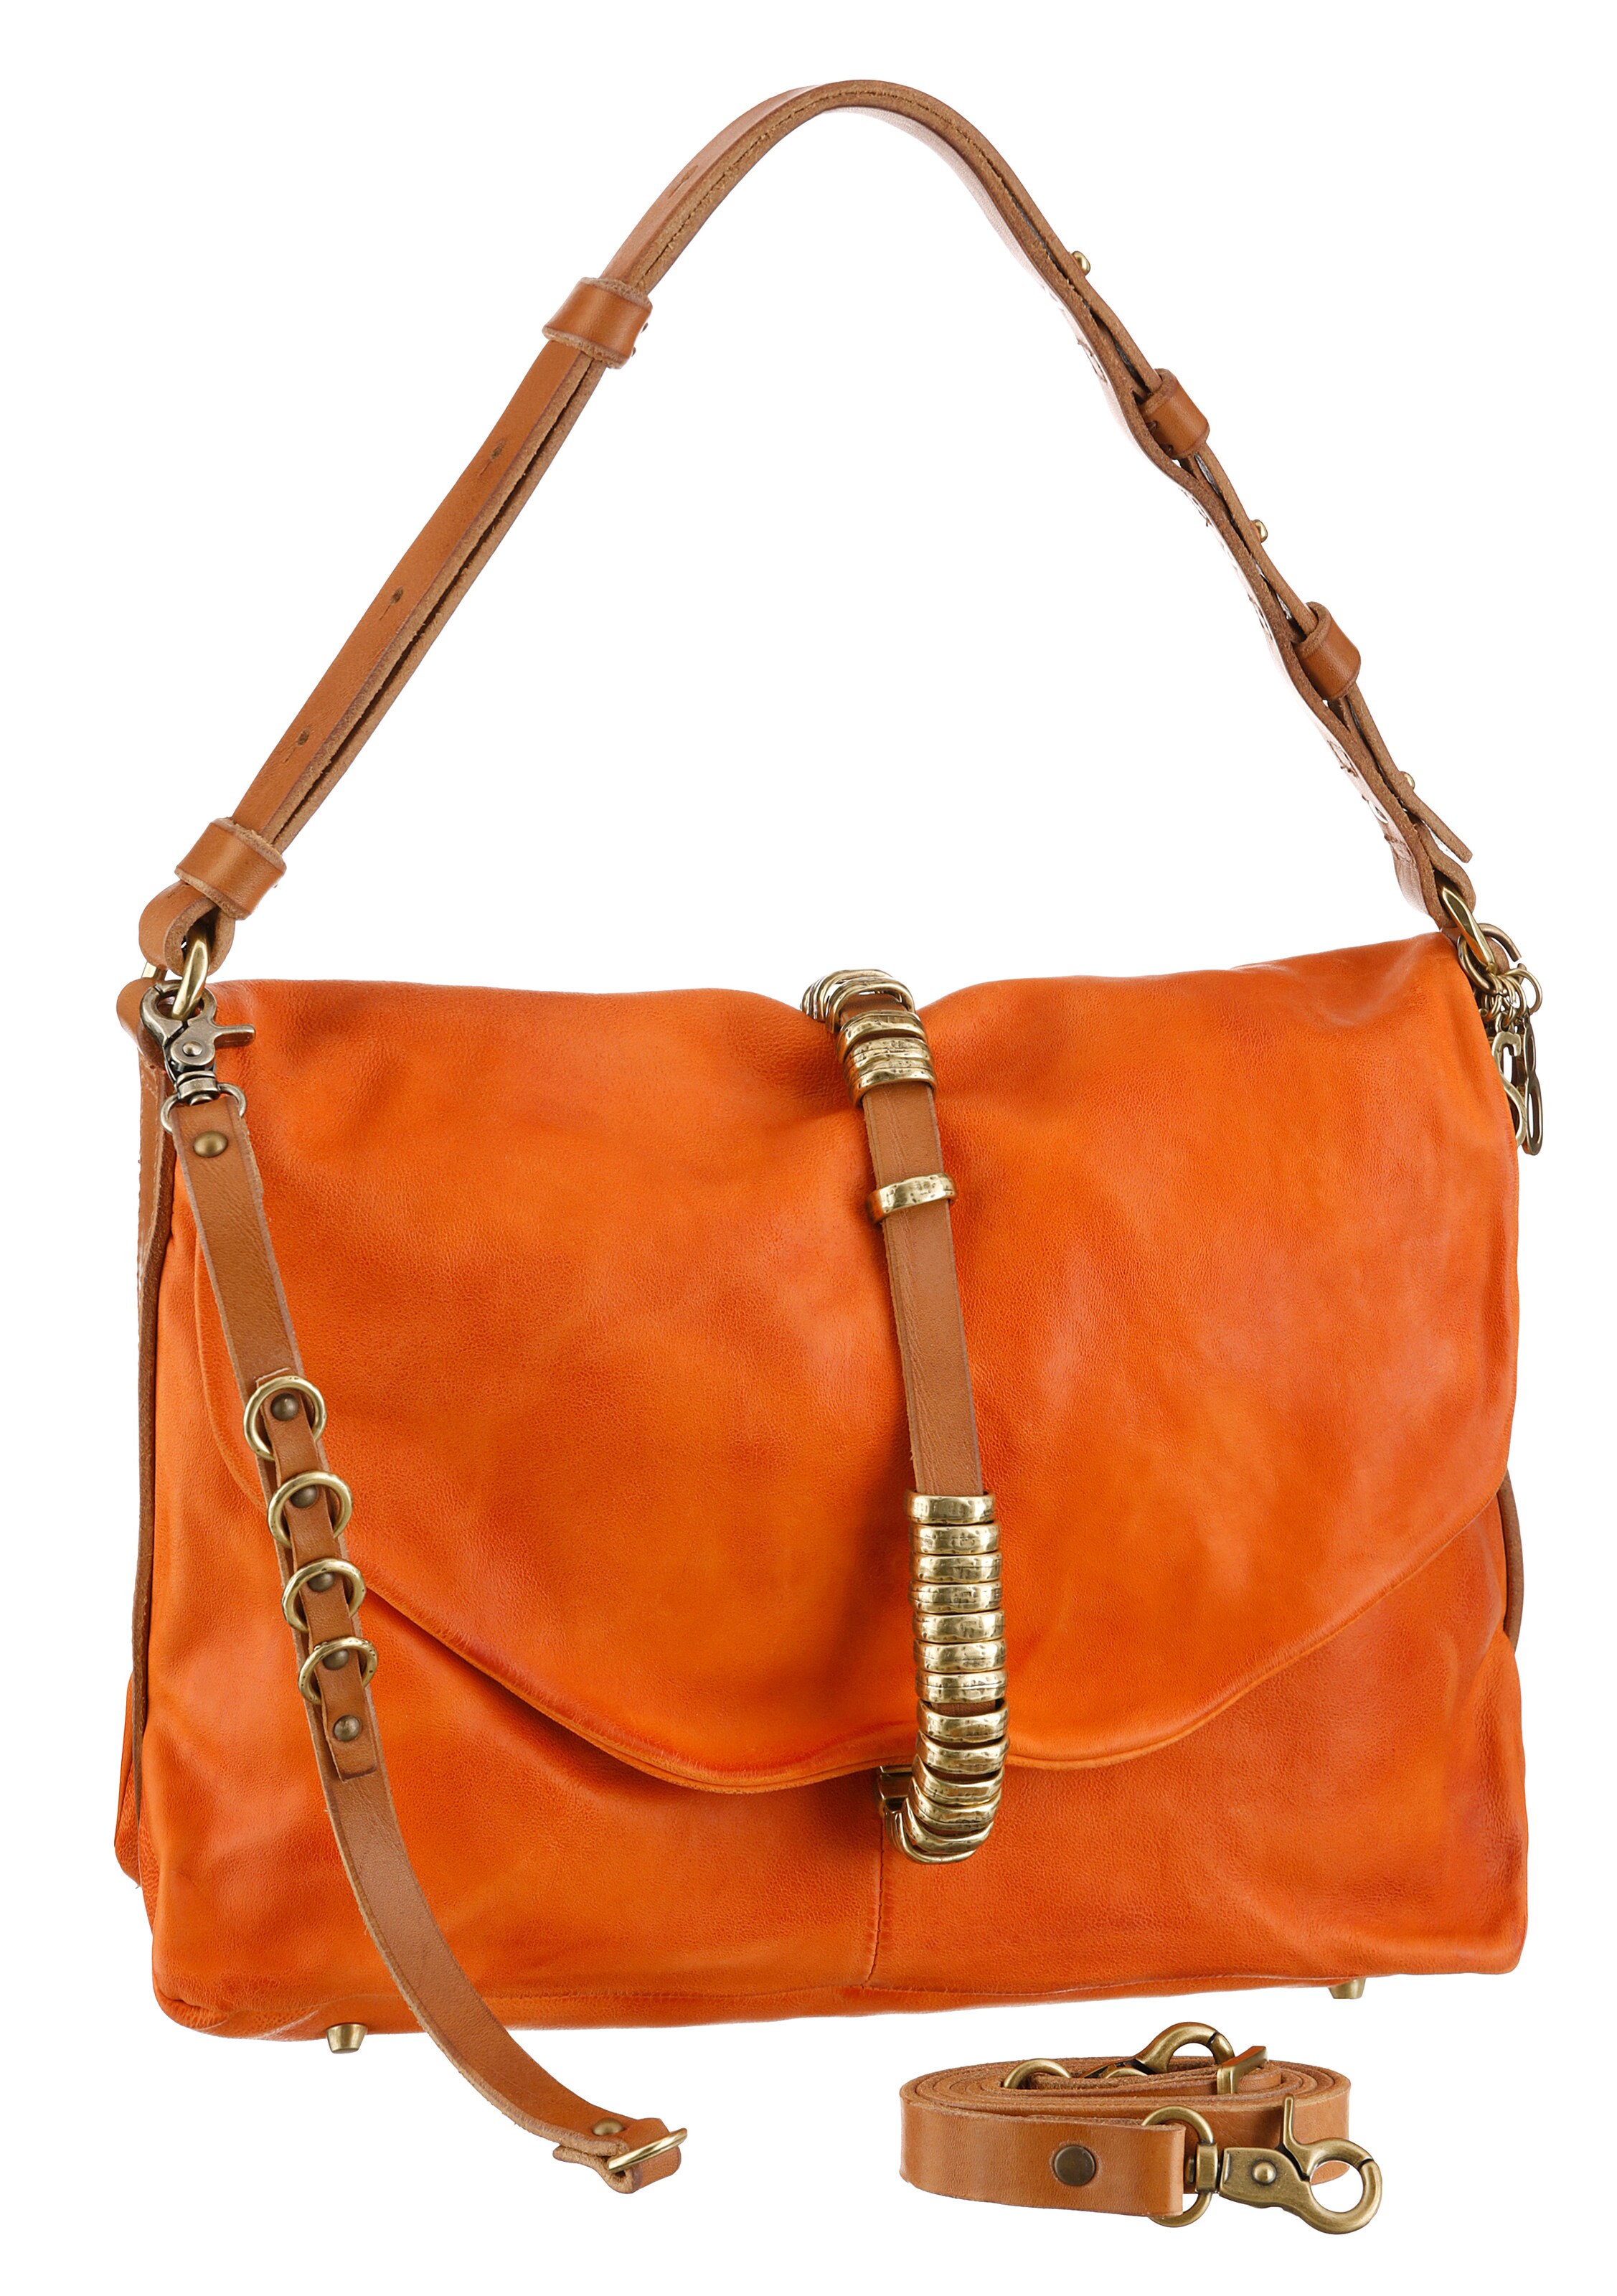 Frauen Taschen & Rucksäcke A.S.98 Handtasche in Orange - NY76143